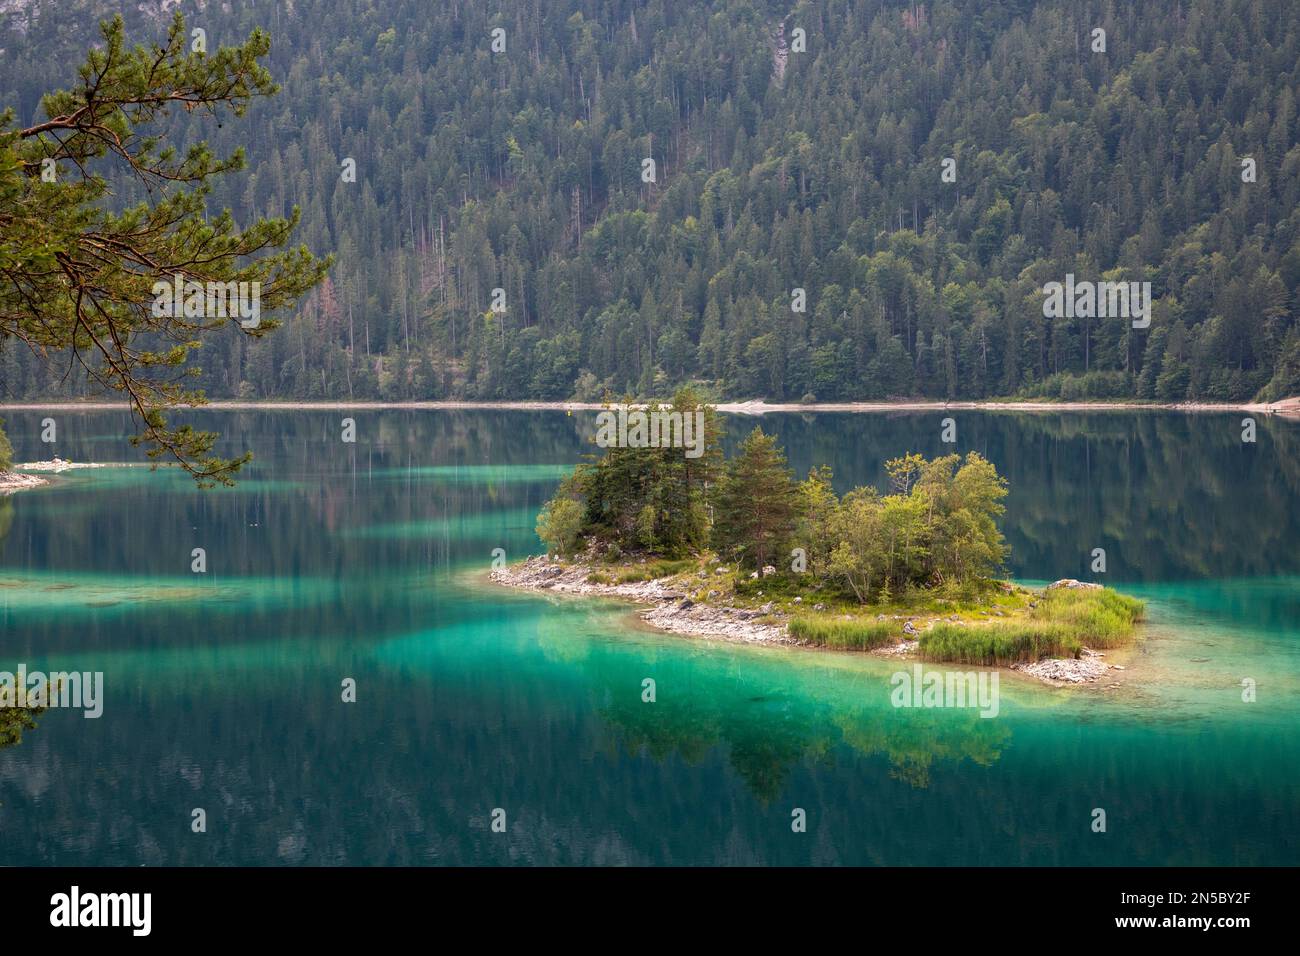 eibsee mit kleinen Inseln im türkisfarbenen Wasser, Deutschland, Bayern, Grainau Stockfoto